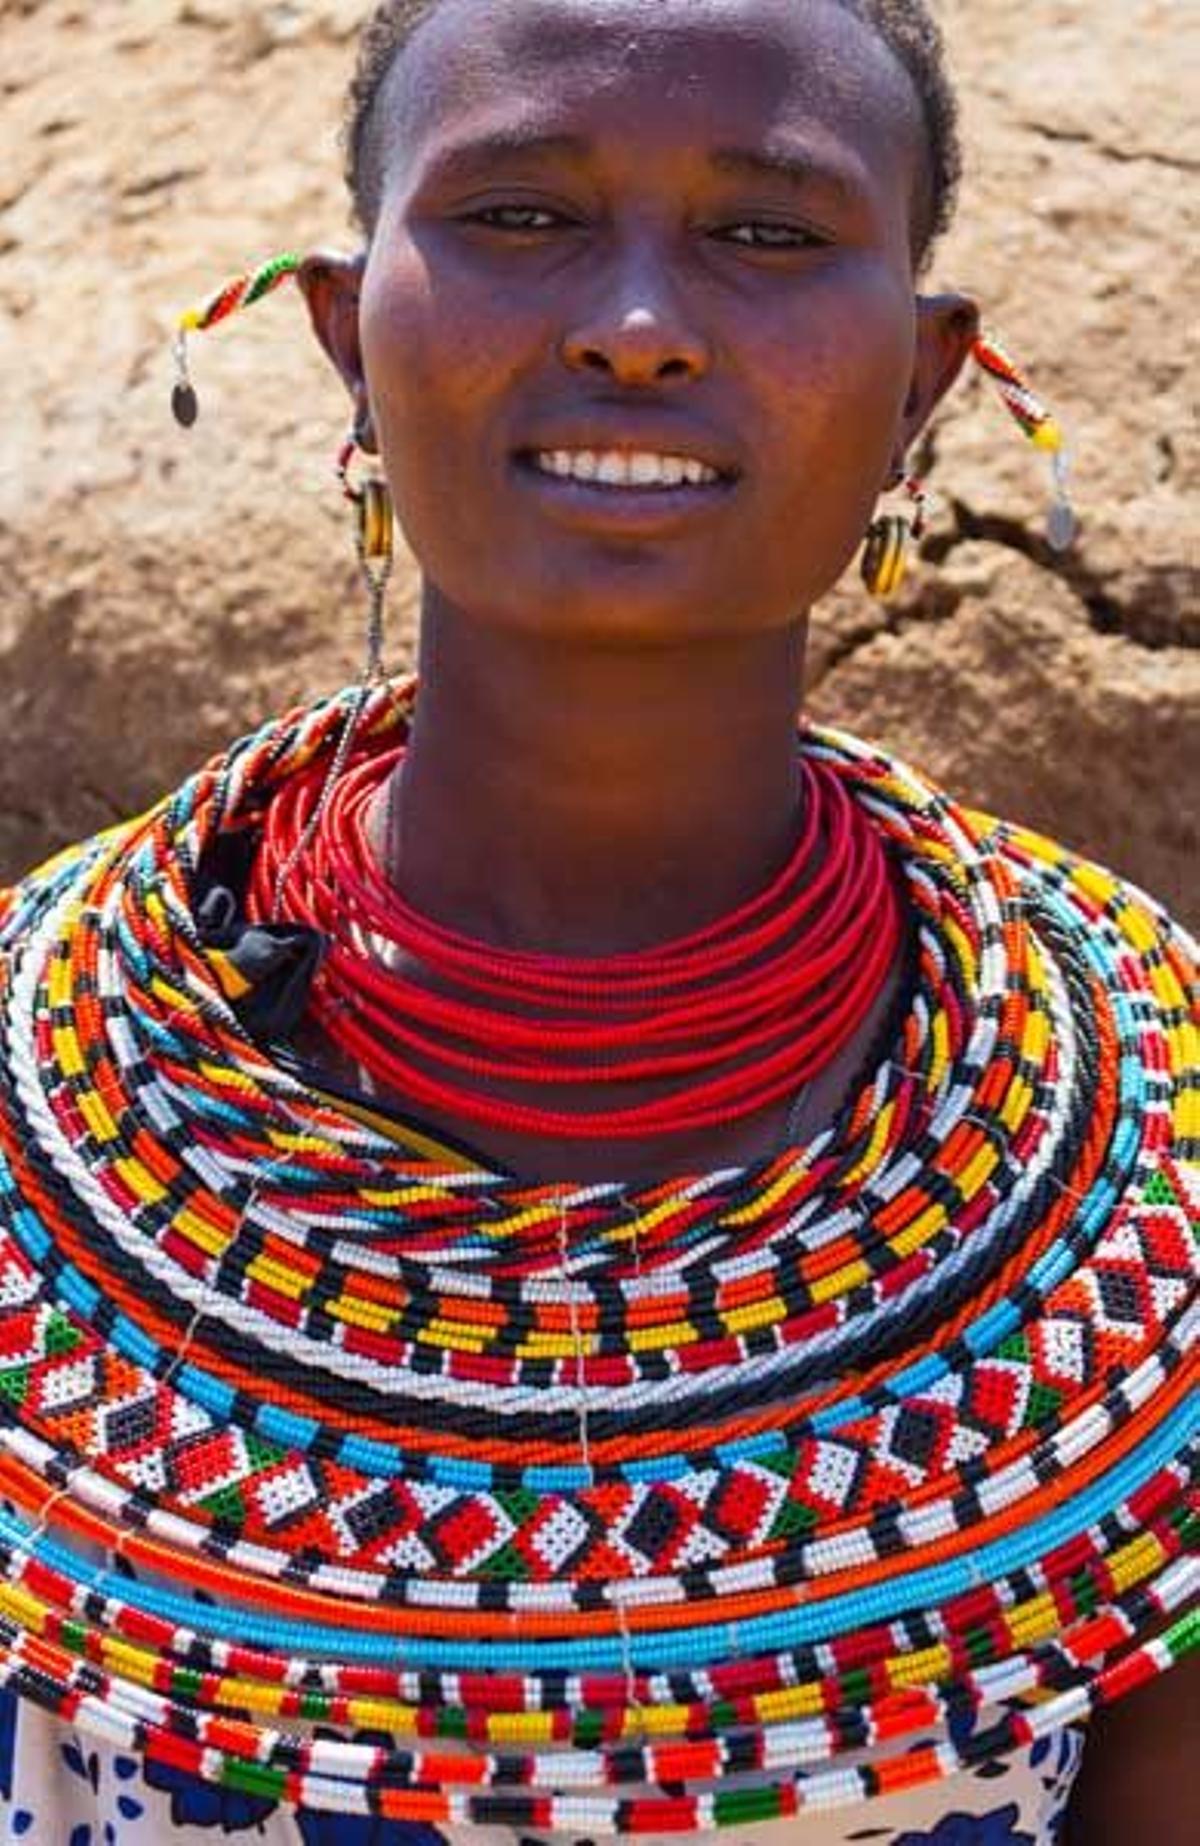 El Parque Nacional de Samburu toma su nombre de la tribu nómada que vive a lo largo de esta región keniana.